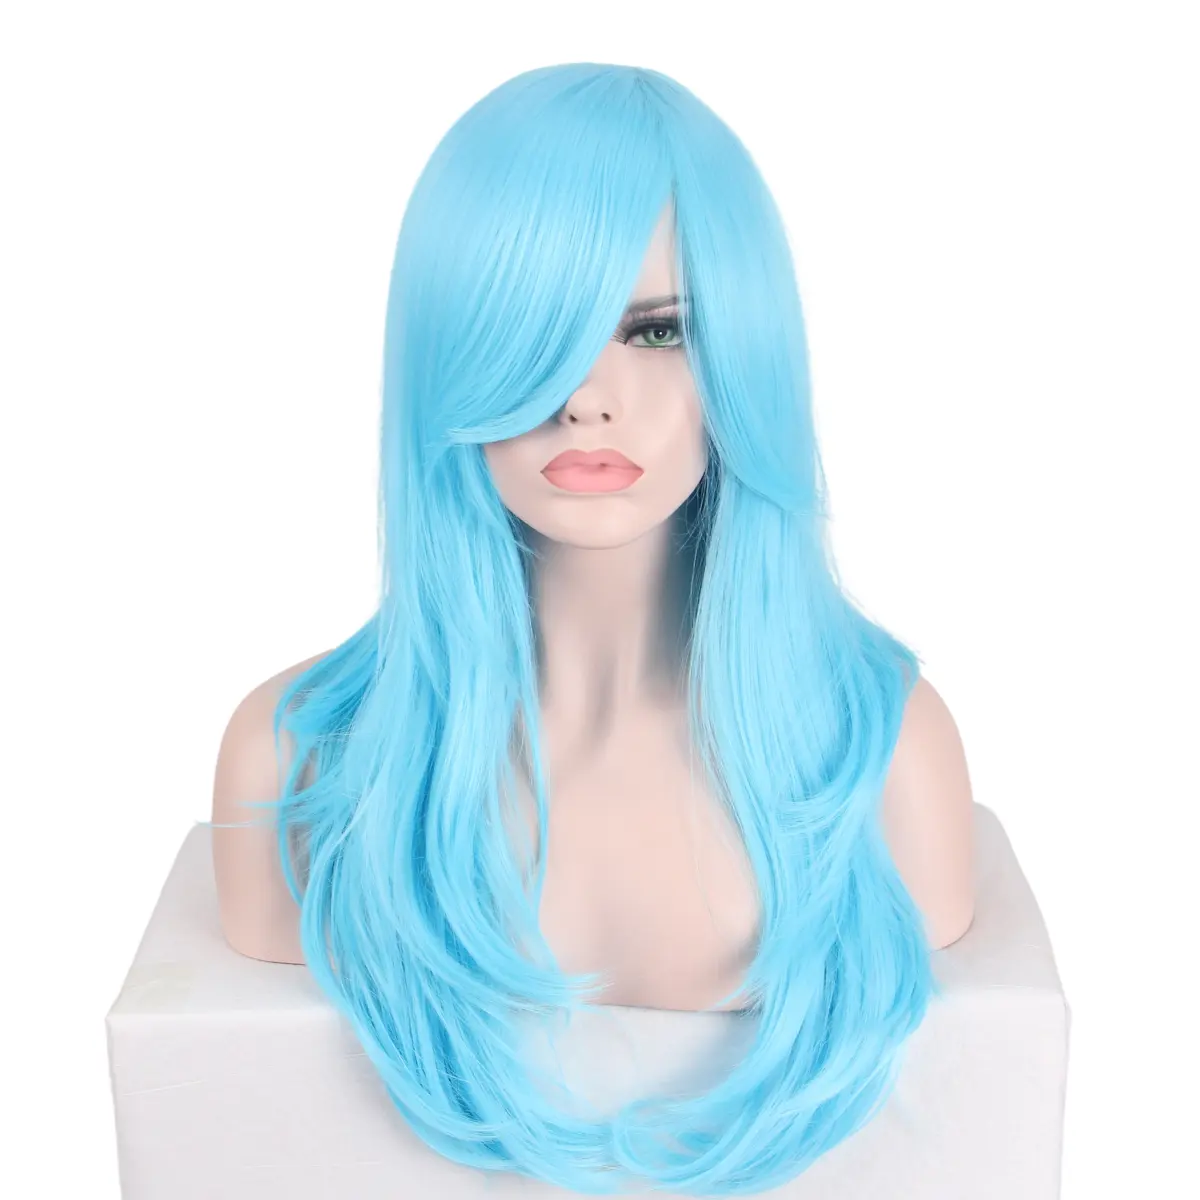 ANXIN 공장 도매 패션 긴 물결 모양의 파란색 곱슬 머리 코스프레 가발